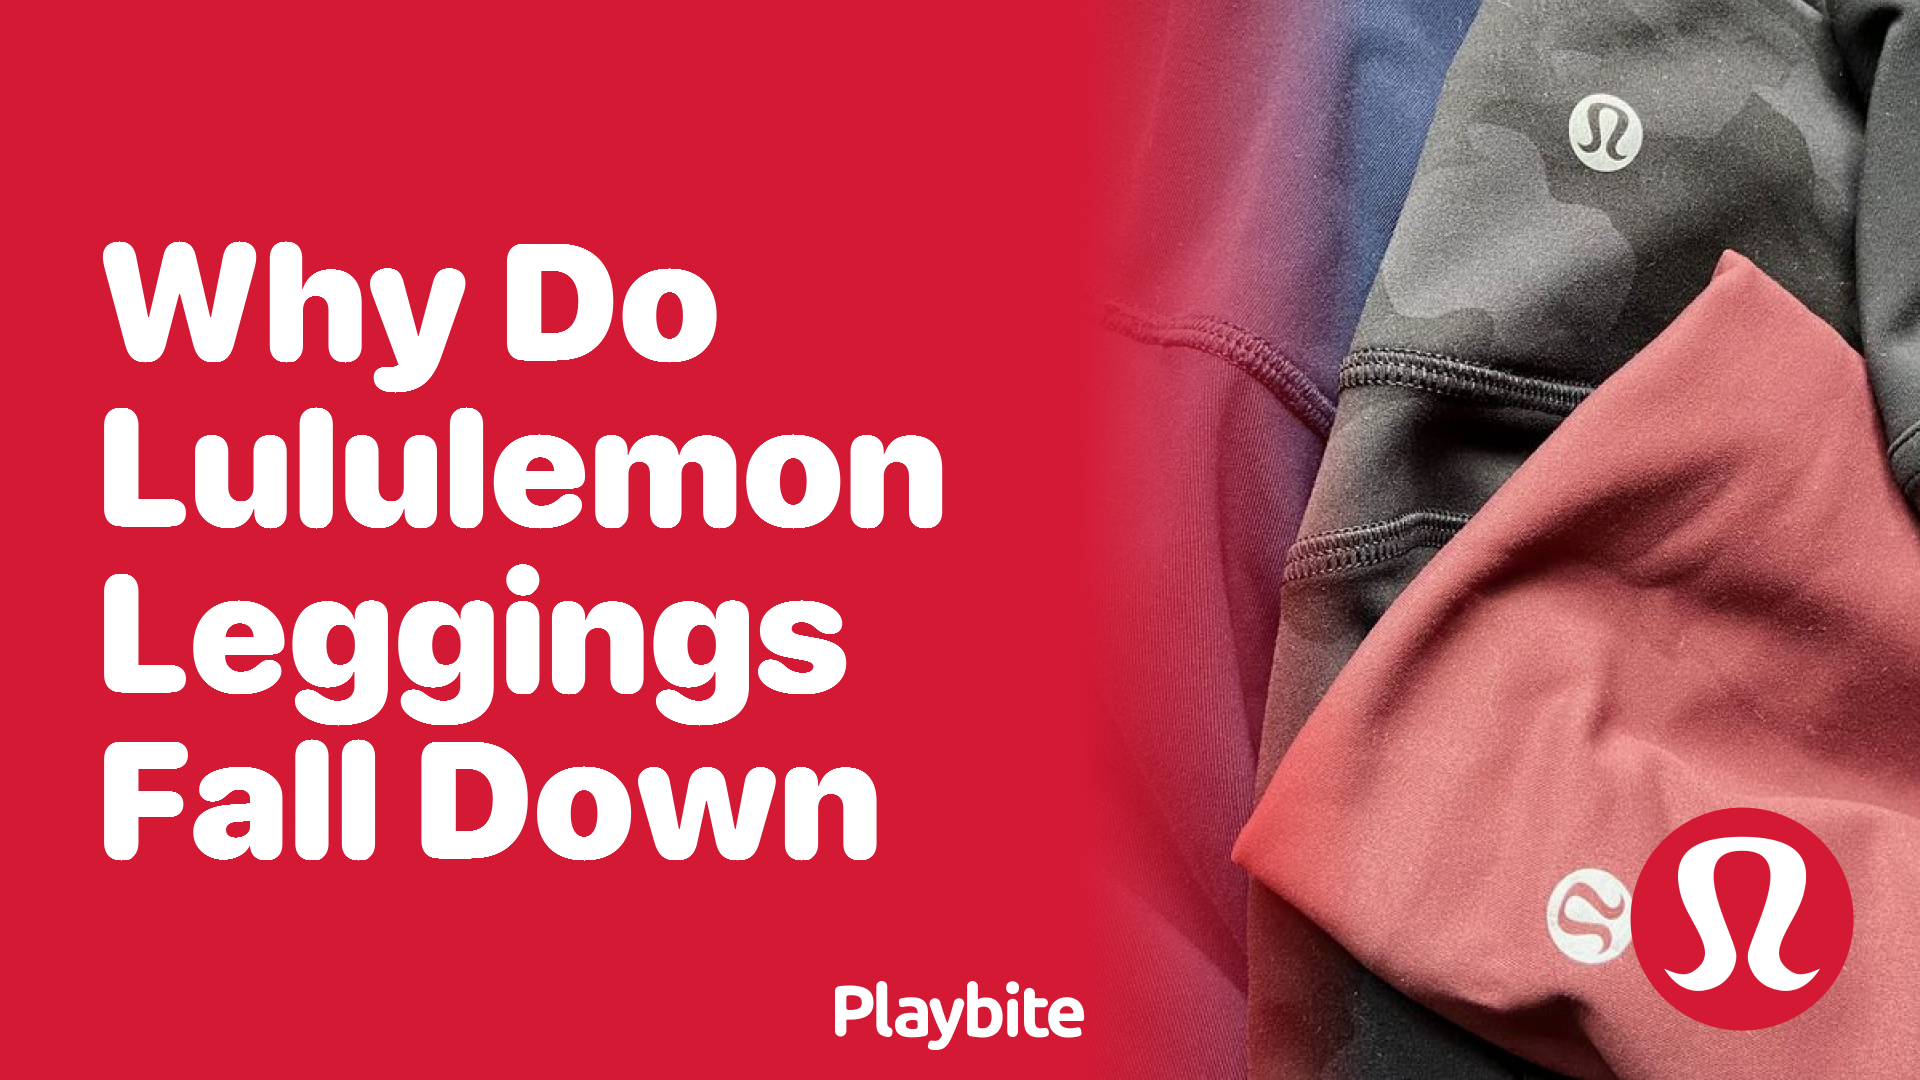 Why do Lululemon Leggings Fall Down? - Playbite